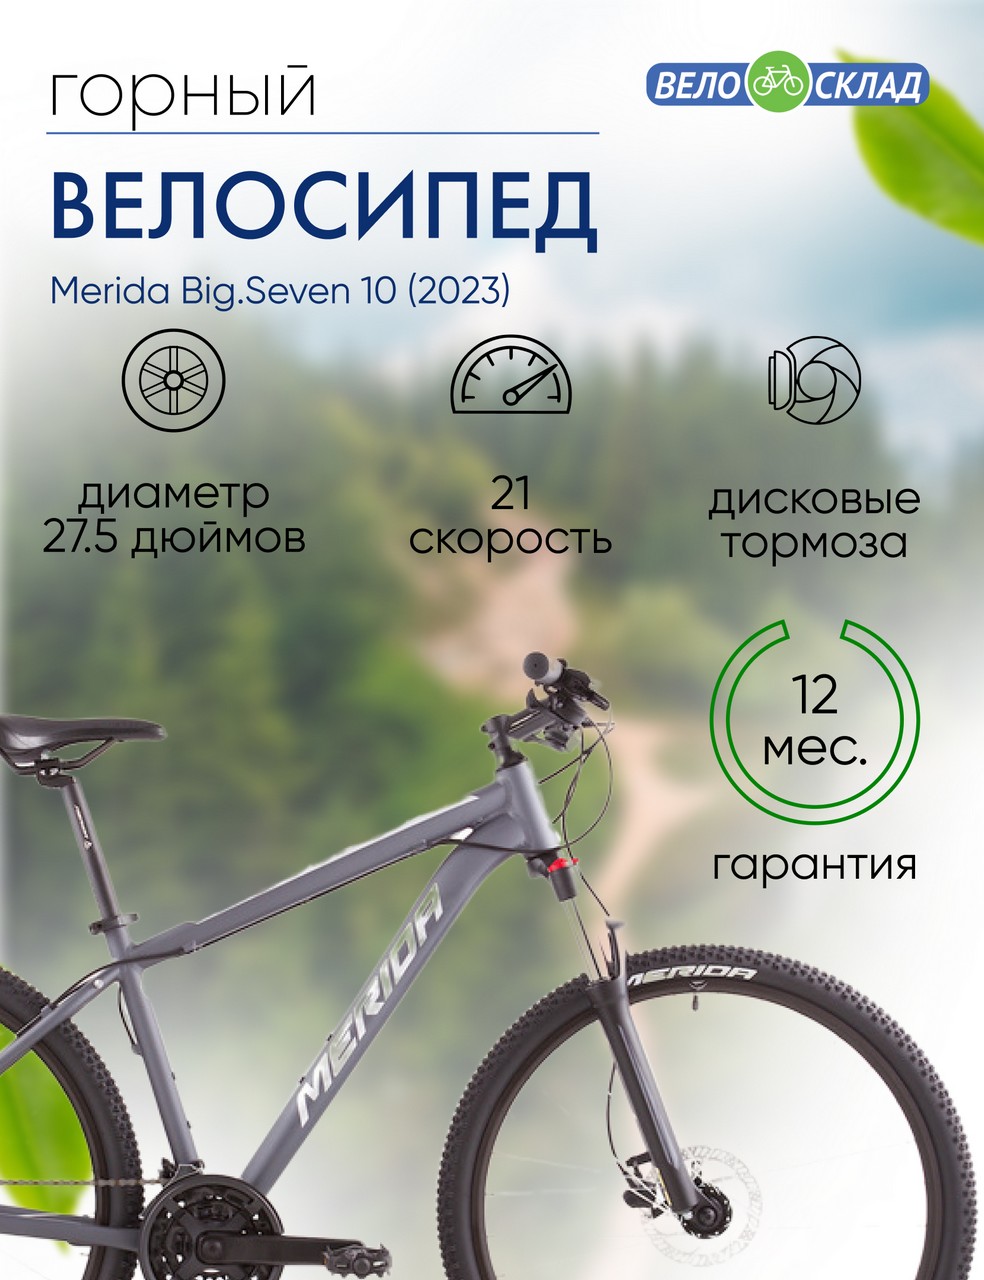 Горный велосипед Merida Big.Seven 10, год 2023, цвет Серебристый-Серебристый, ростовка 13.5